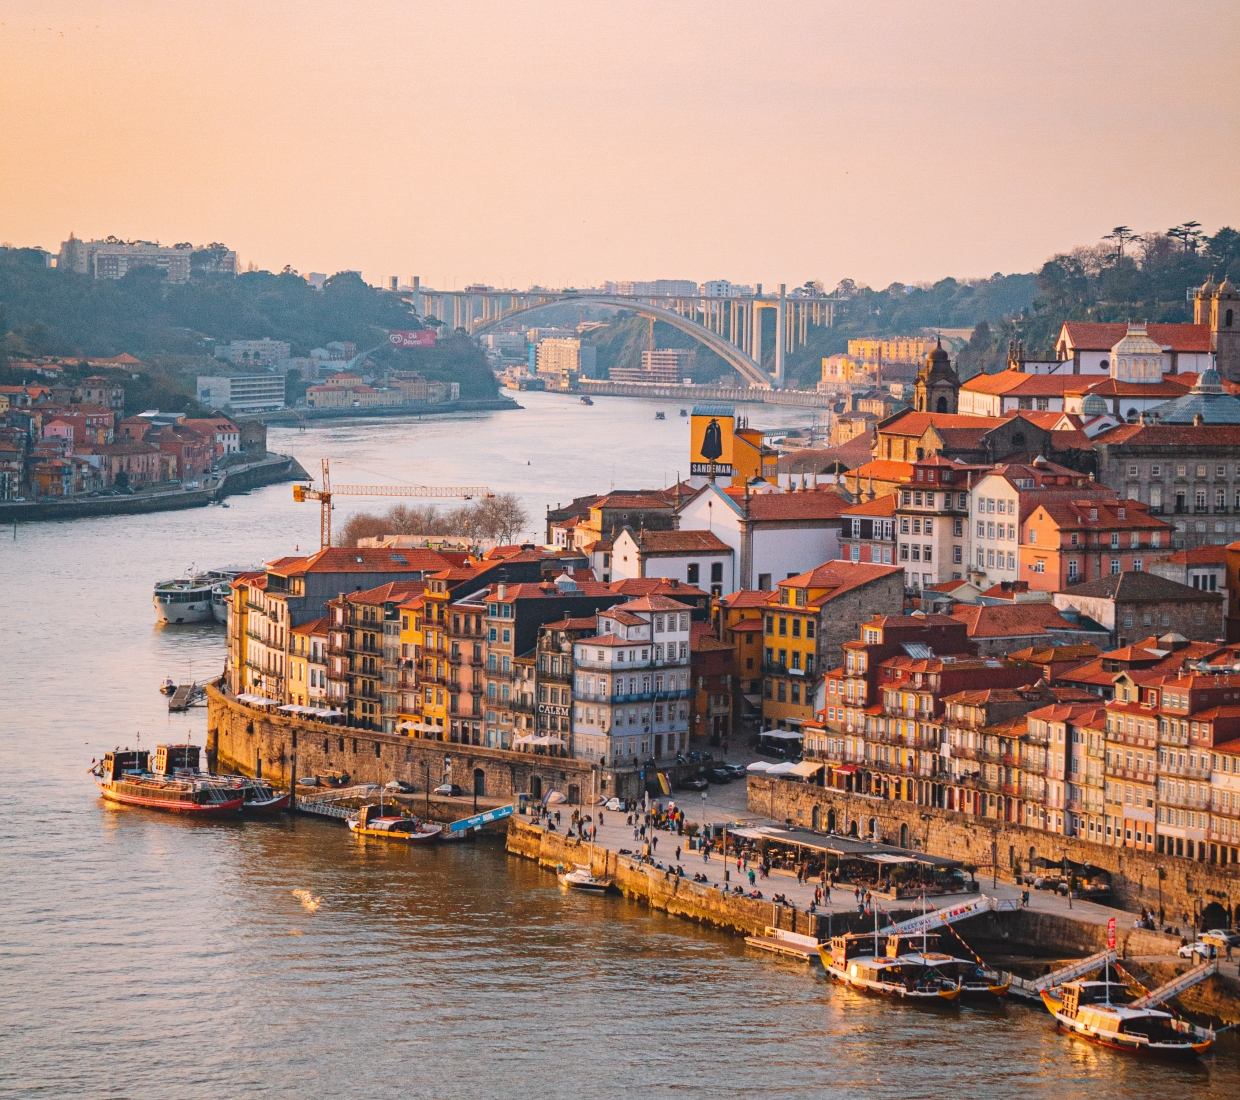 Seleção dos melhores e mais bonitos hotéis e casas de férias no Porto